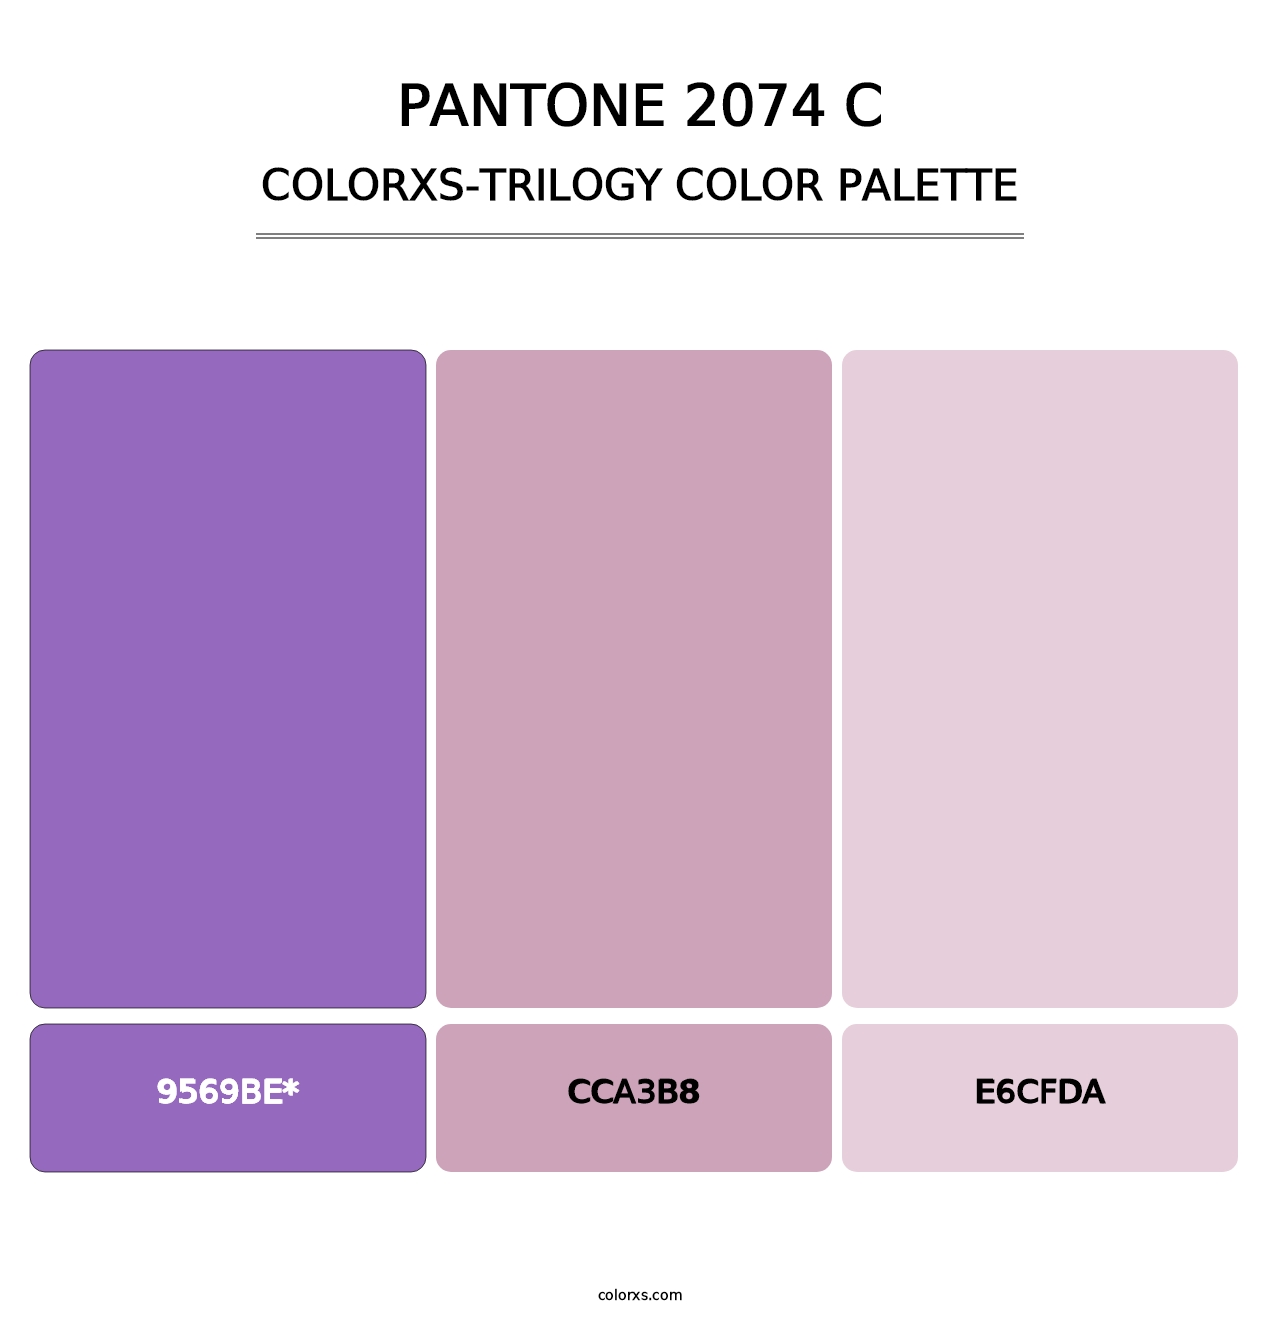 PANTONE 2074 C - Colorxs Trilogy Palette